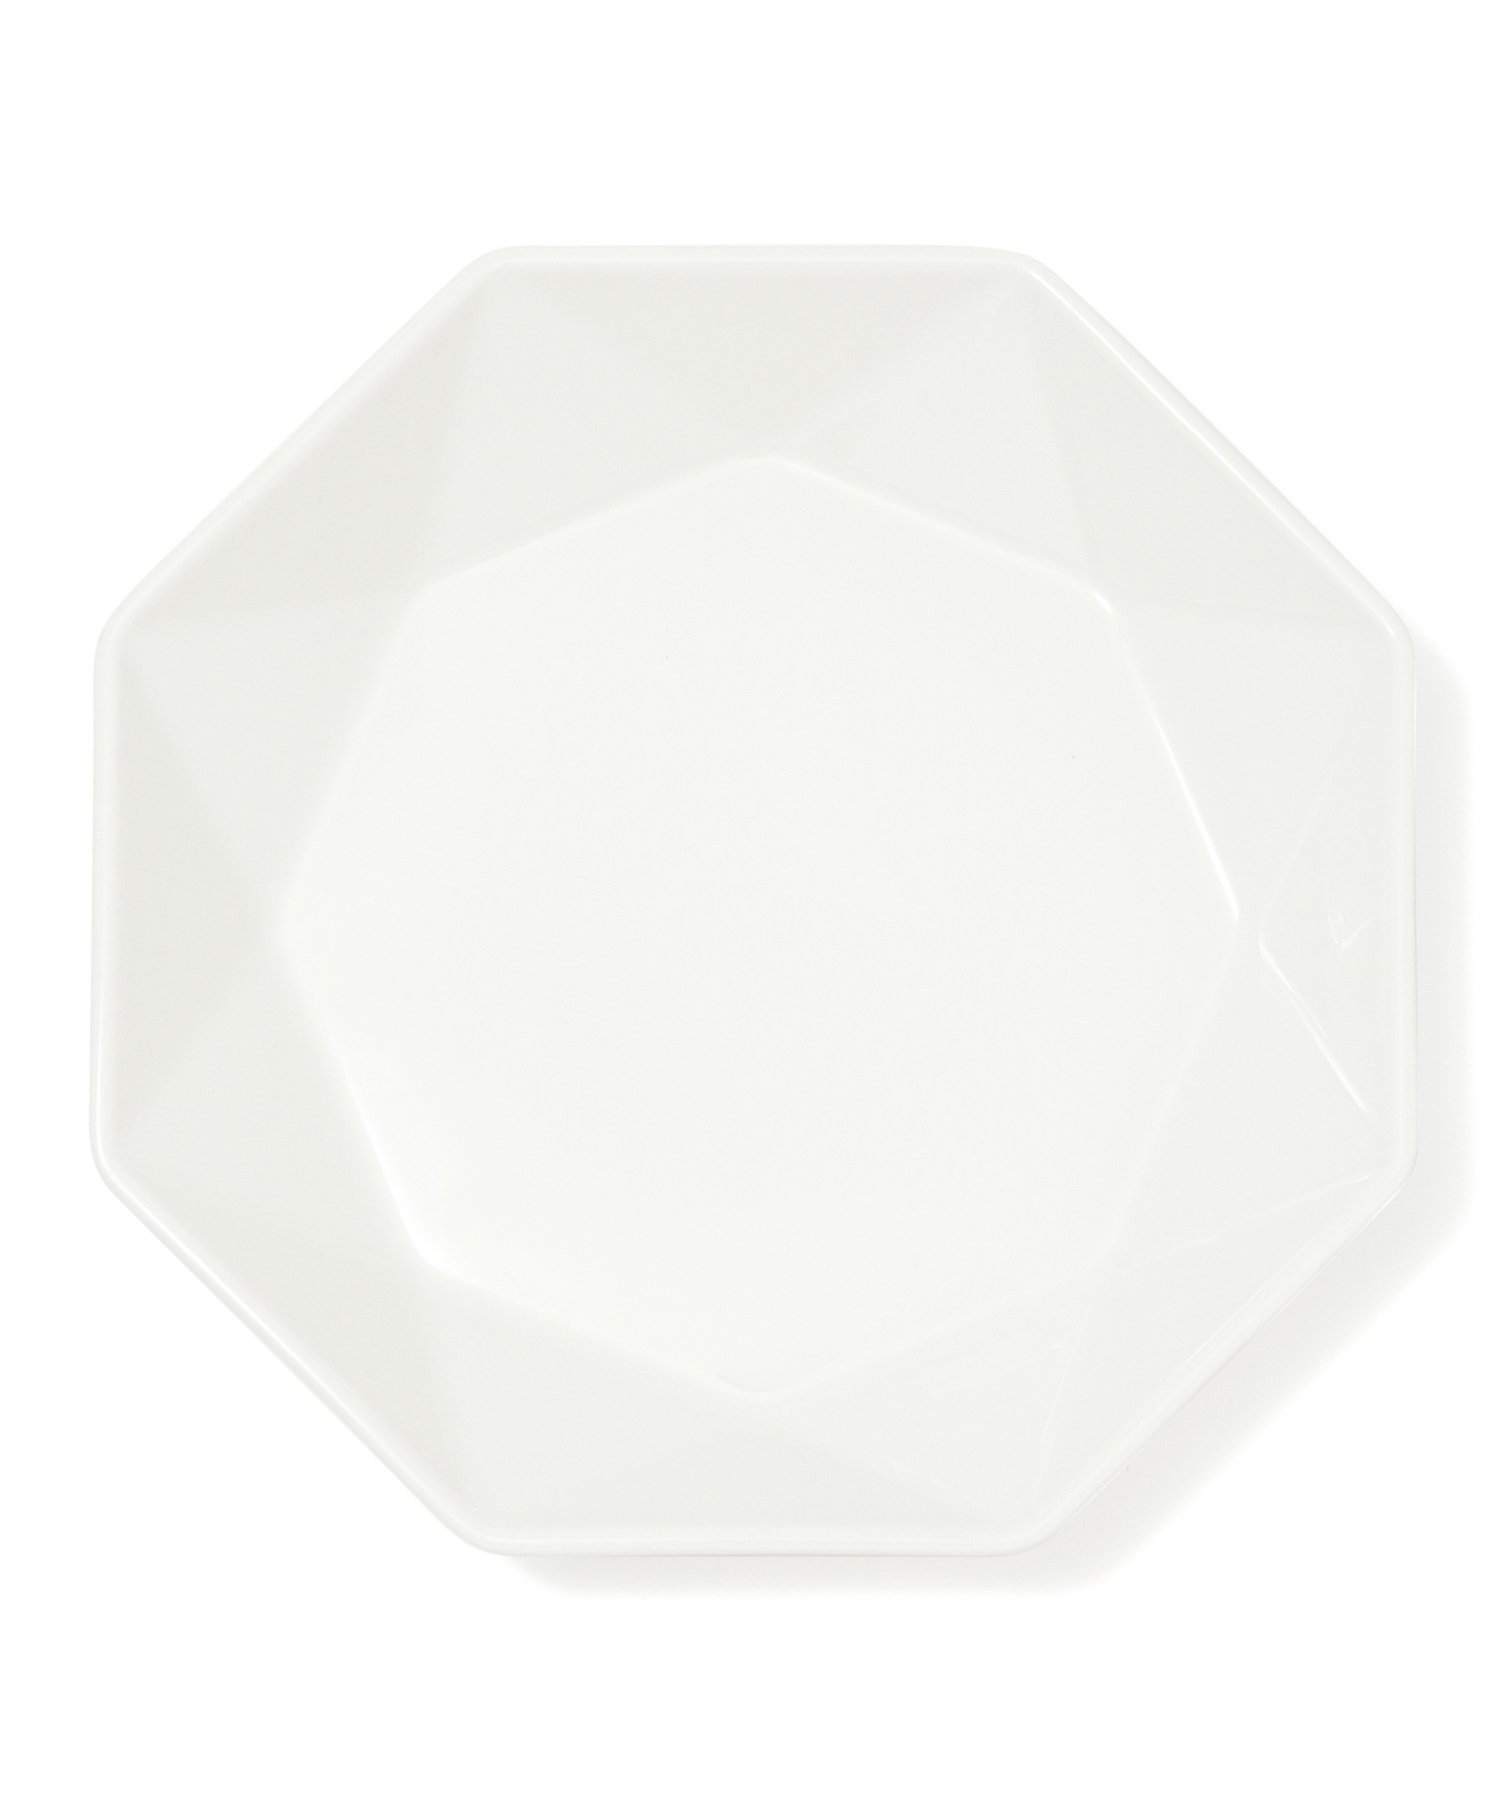 フランフラン 皿・プレート Francfranc ブランシェ ディーププレート L オクタゴン フランフラン 食器・調理器具・キッチン用品 食器・皿 ホワイト